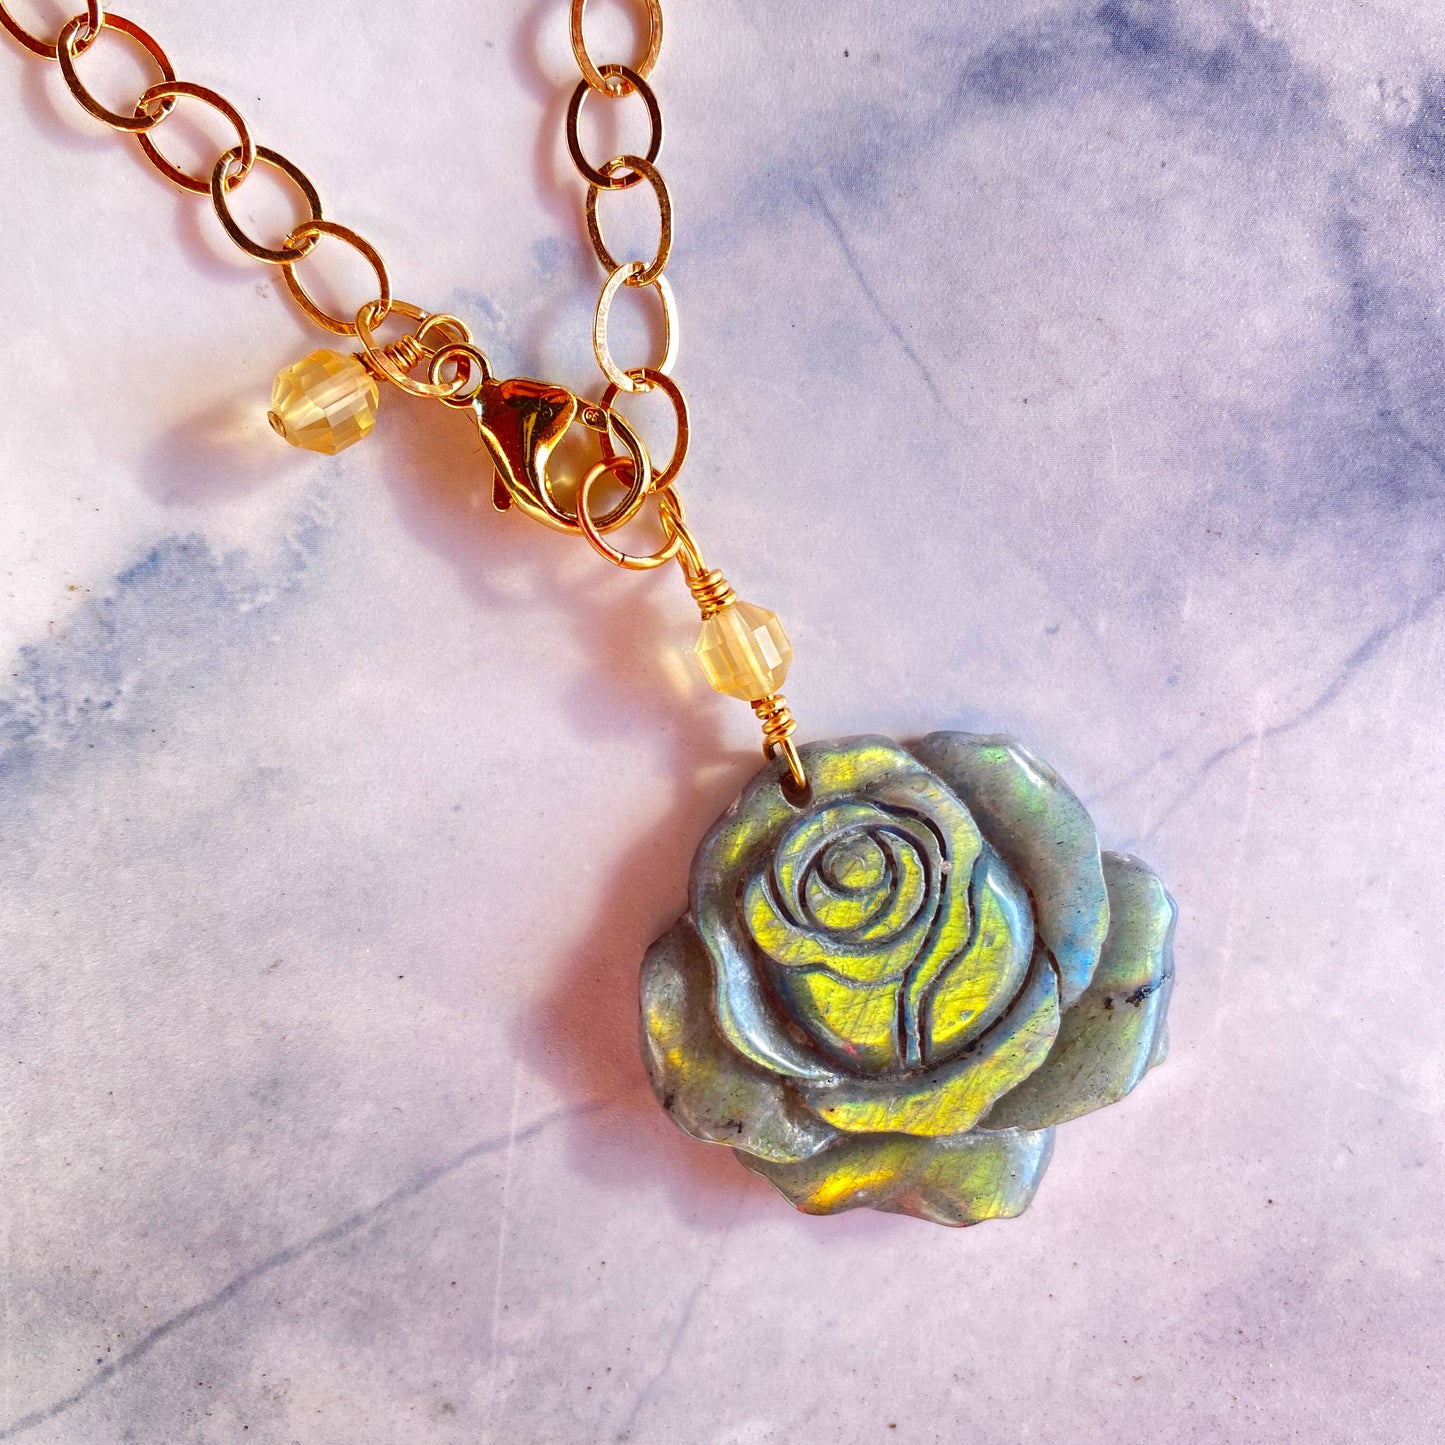 Labradorite gemstone carved Rose pendant on 14 kt Gold Necklace